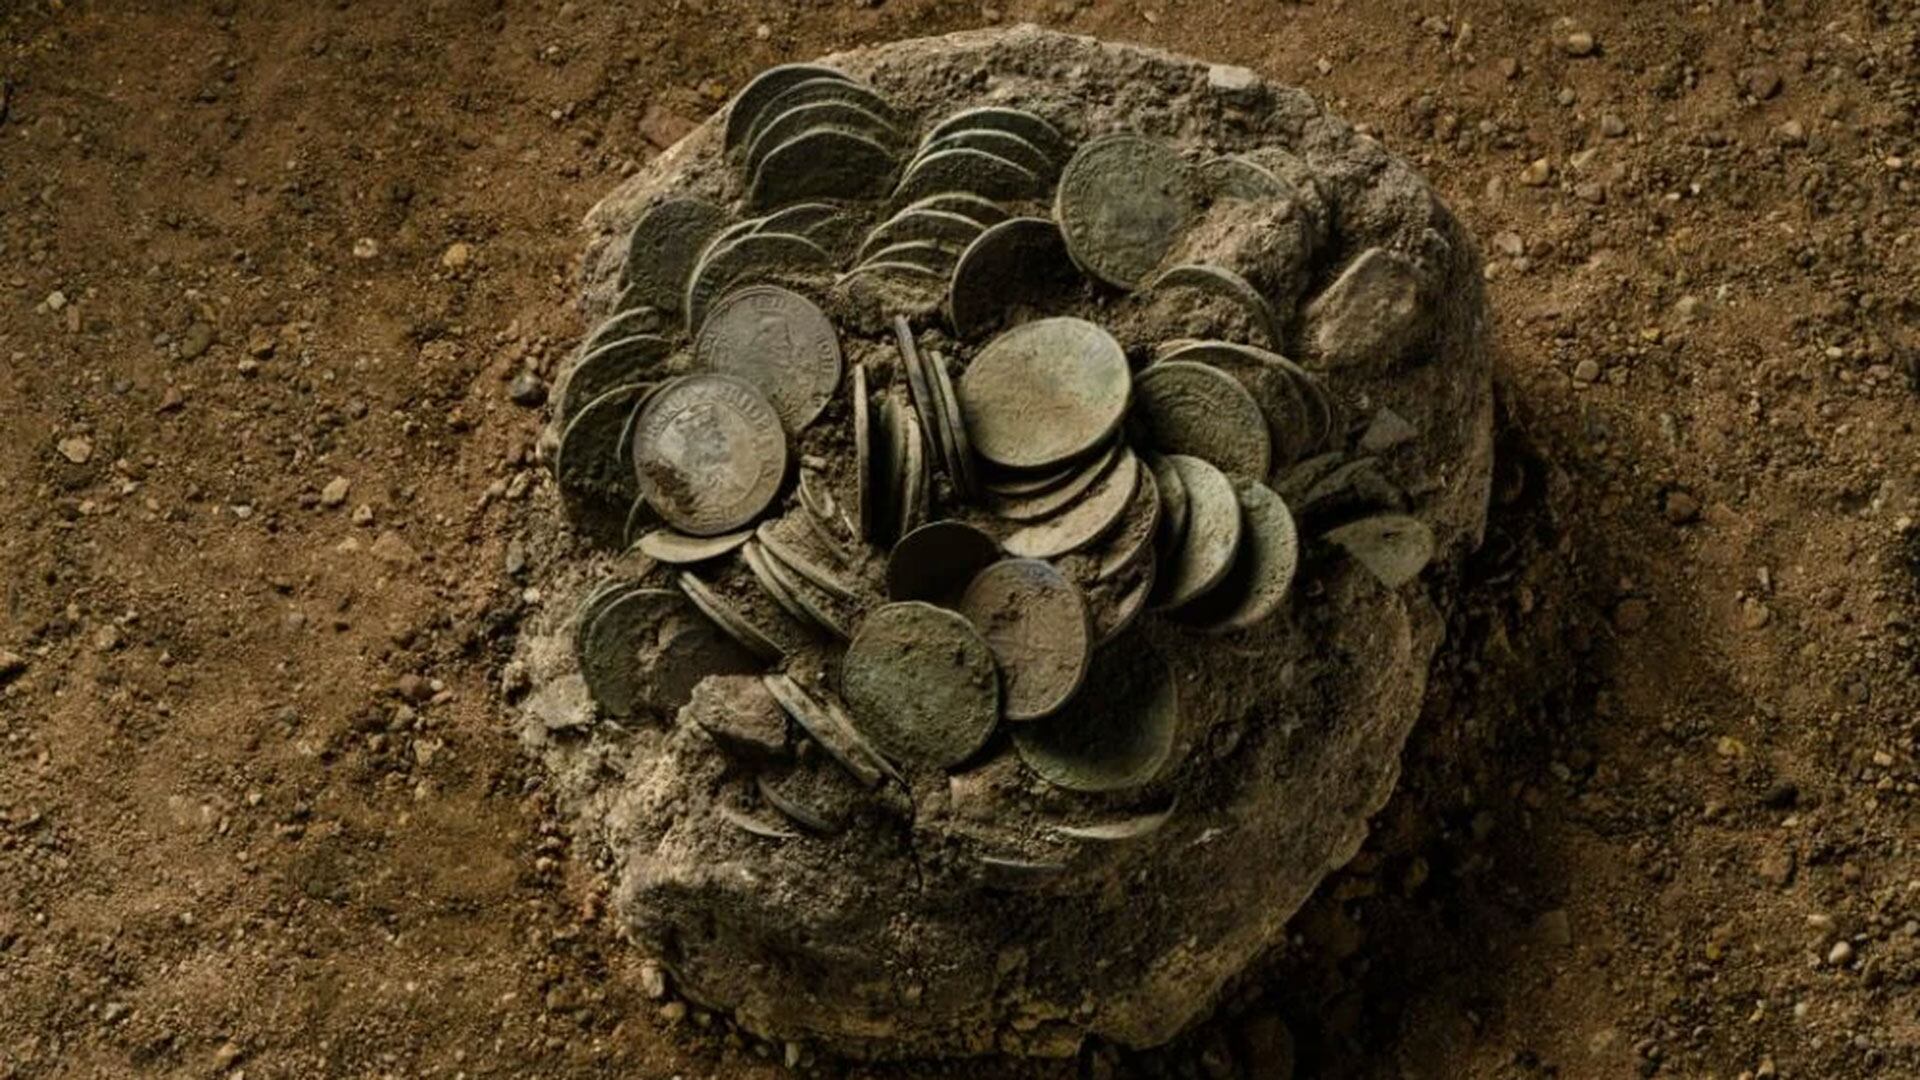 Monedas encontradas en Alemania